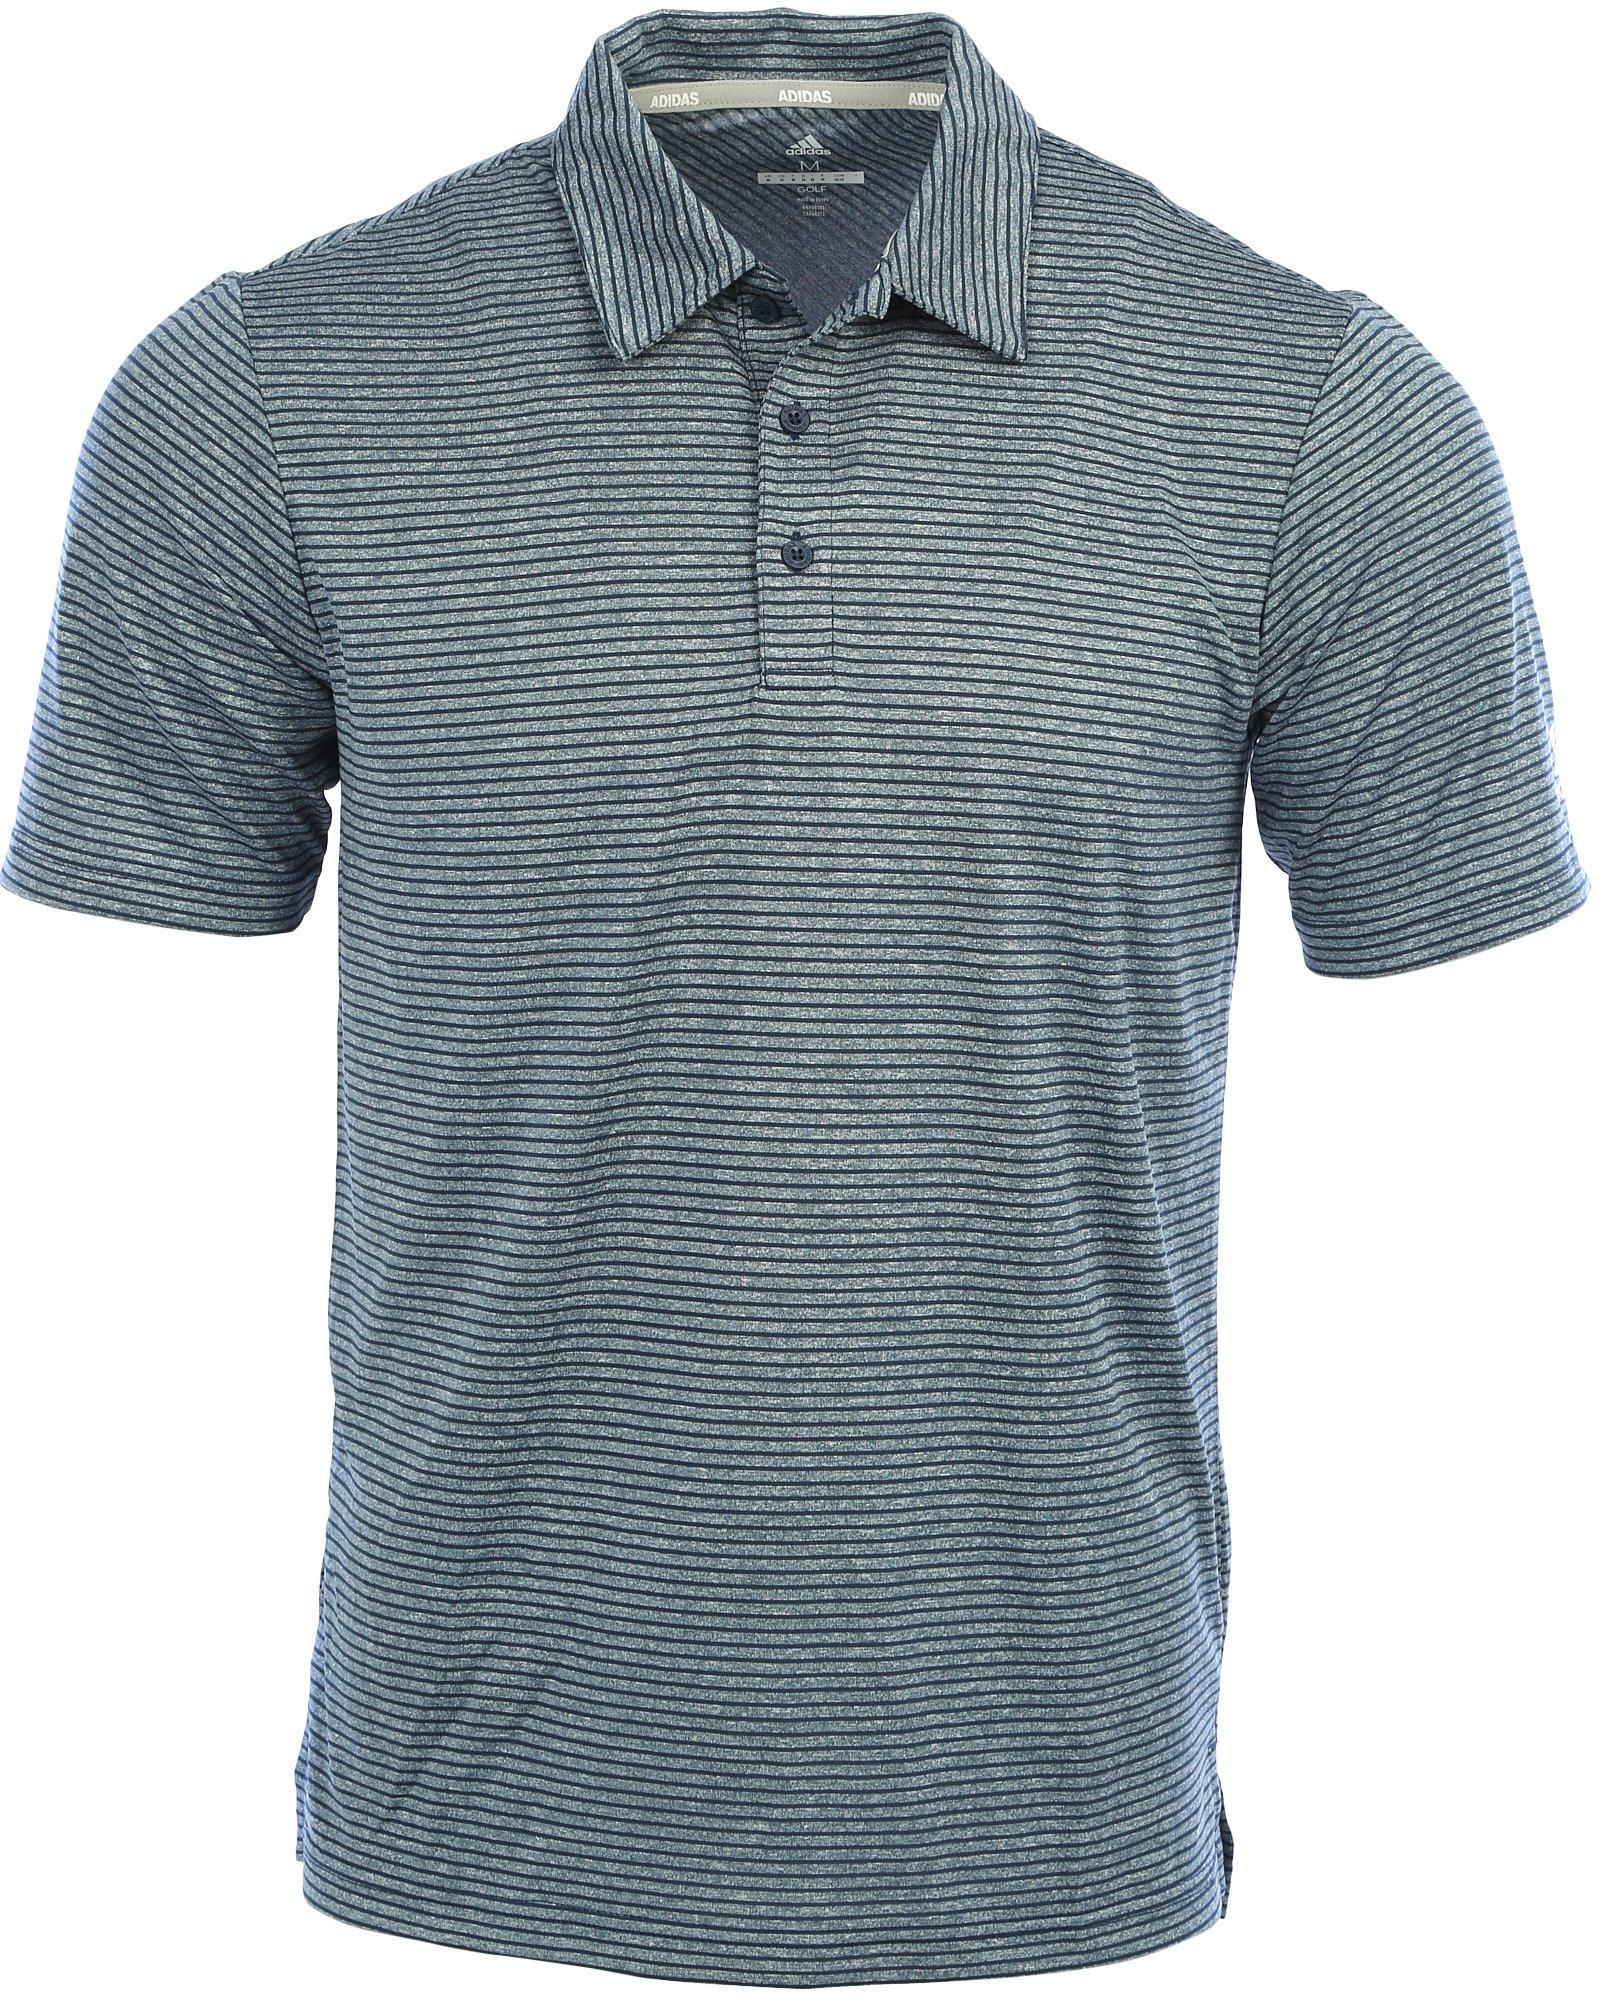 Men's Stripe Golf Polo Shirt